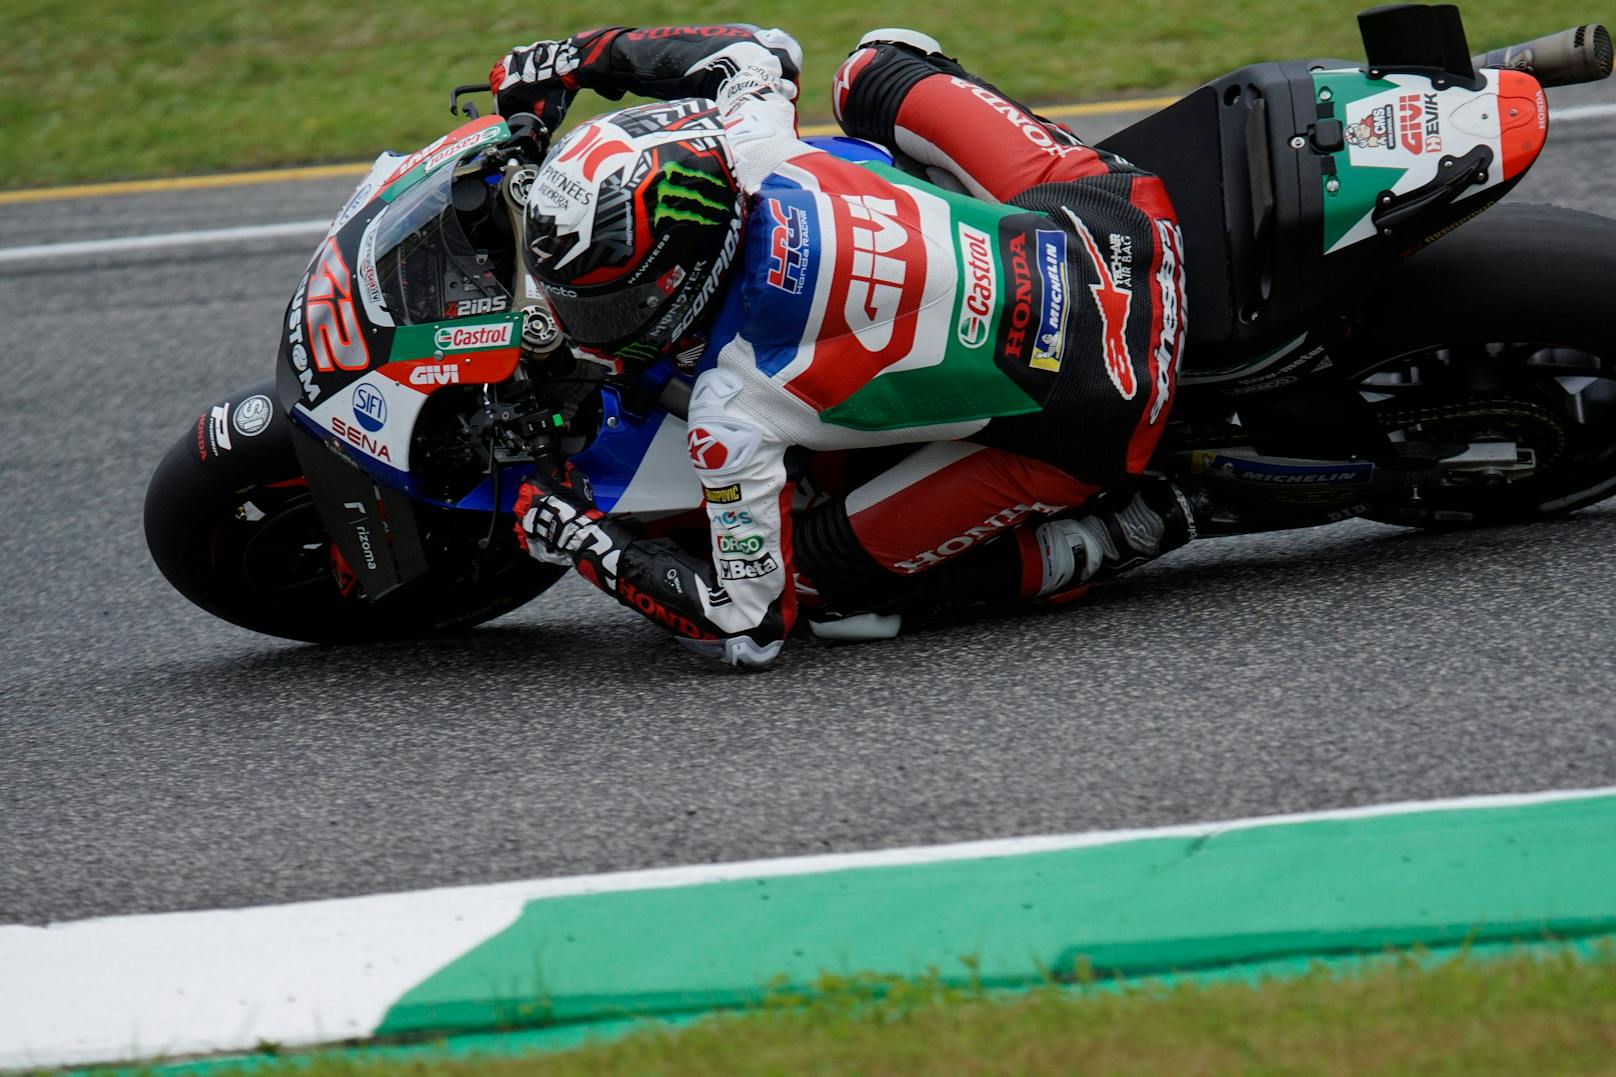 MotoGP-Star stürzt und bricht sich das Bein